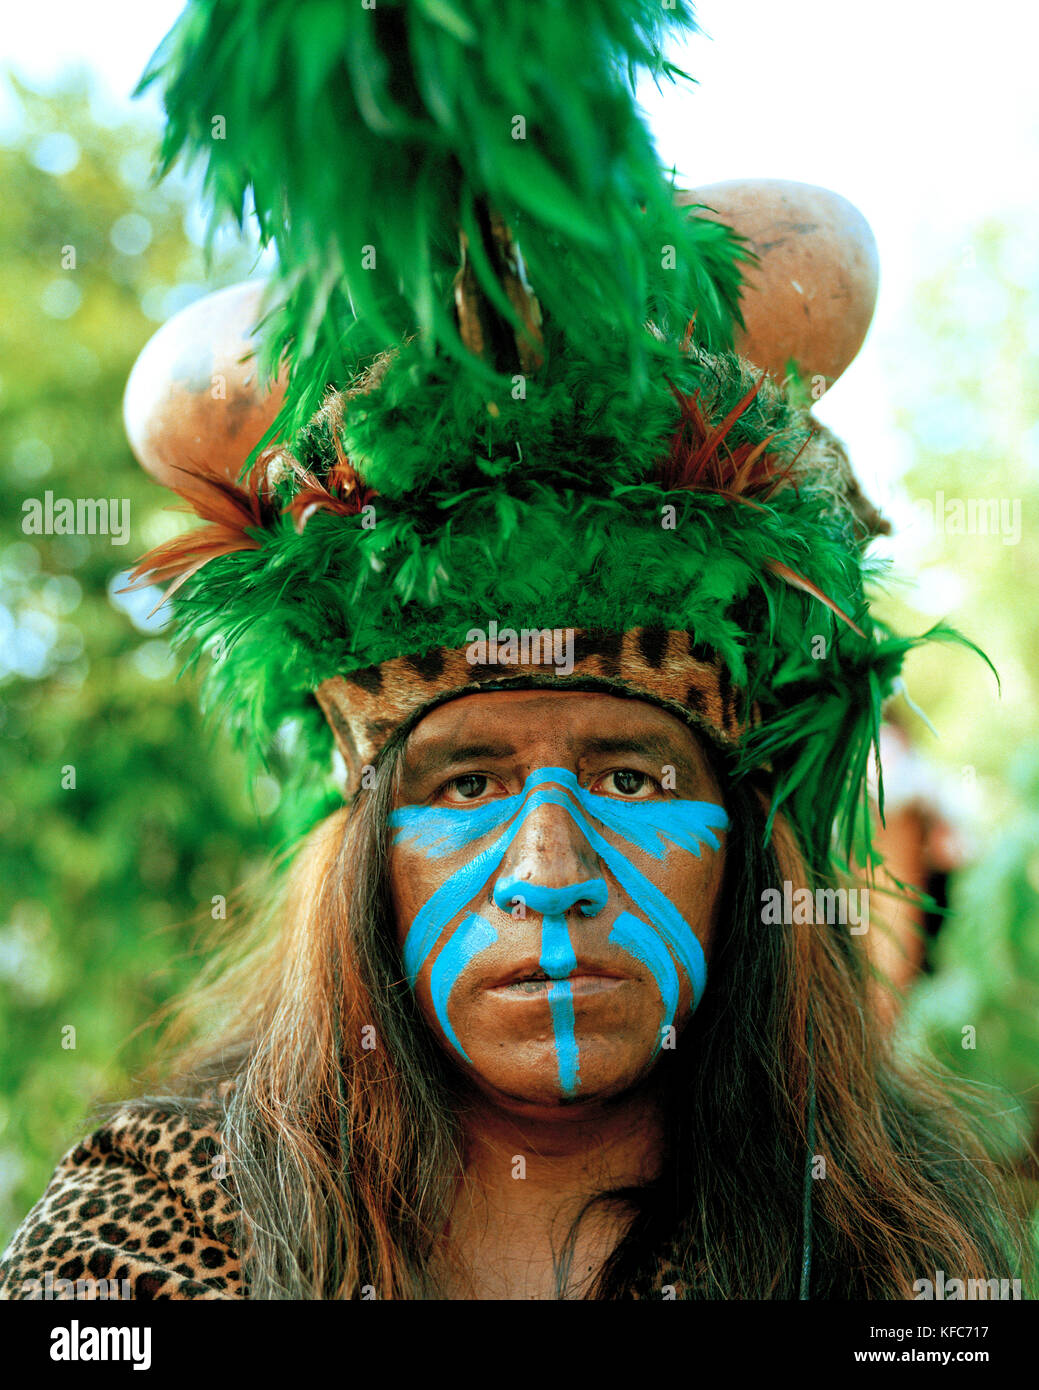 Le Mexique, Riviera maya, maya indian man en costume de cérémonie, péninsule du Yucatan Banque D'Images